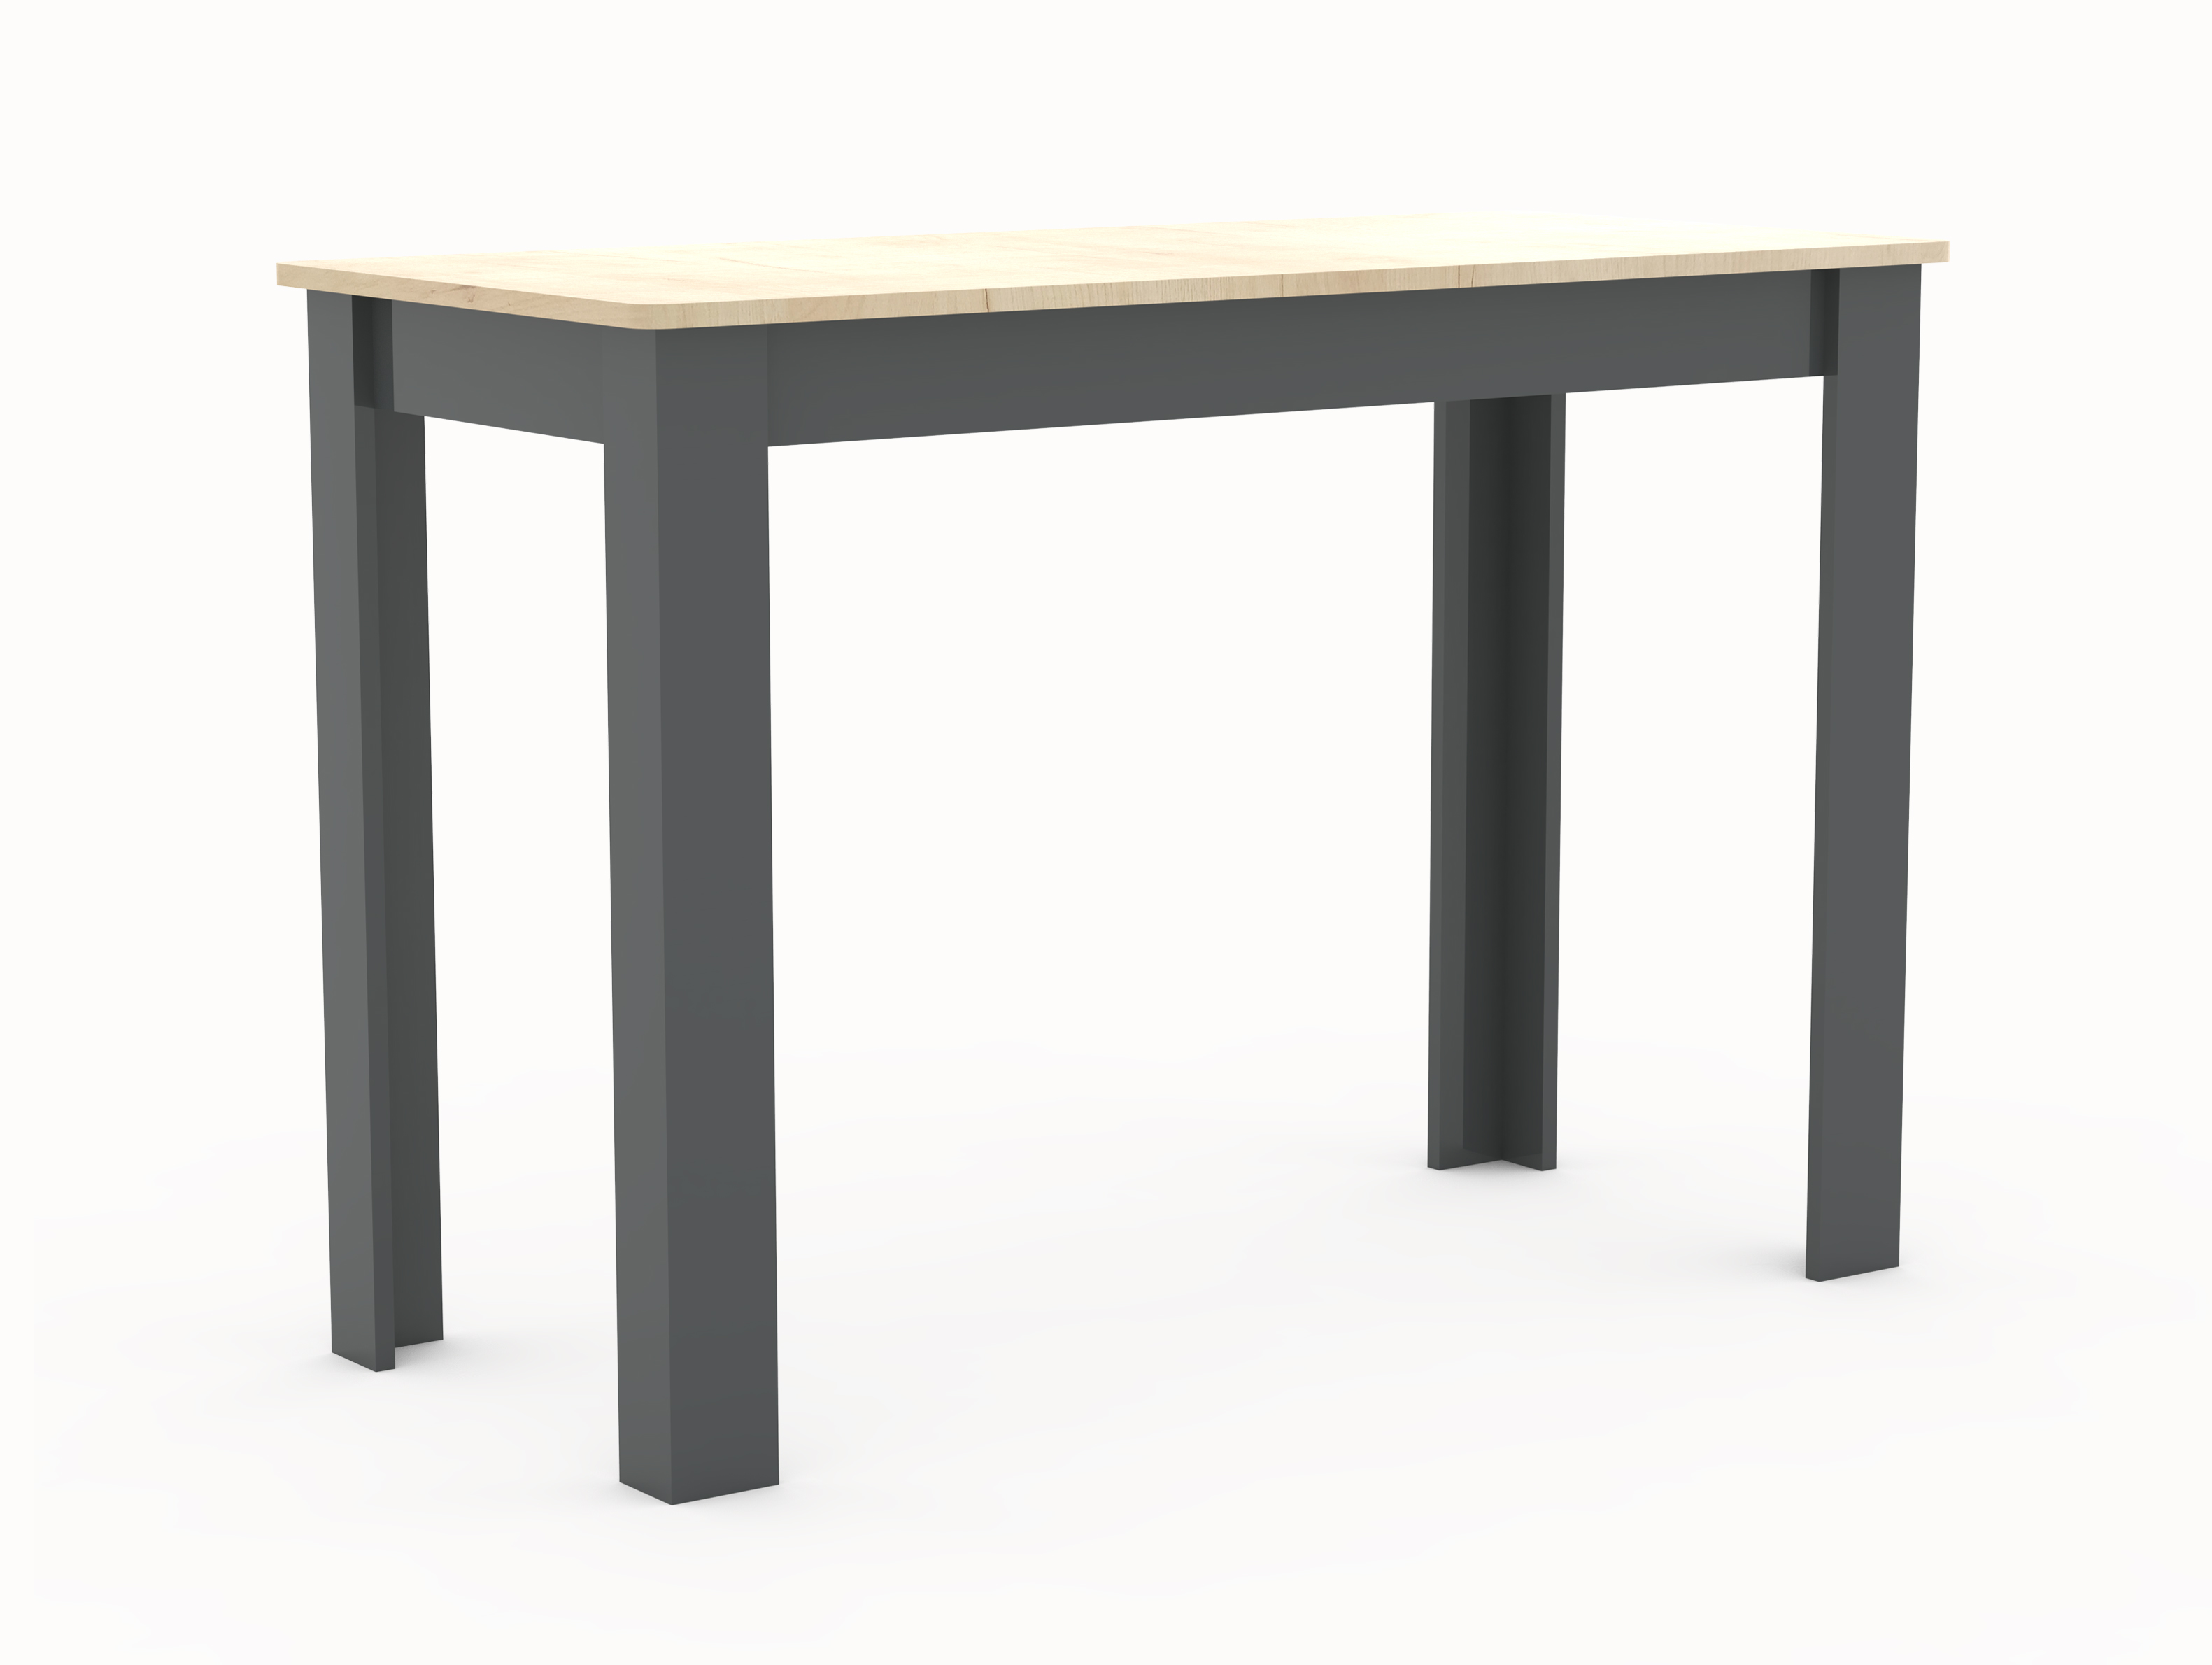 VCM NORDIC Esal 110 matbord, rektangulärt - naturligt och antracitgrå trä